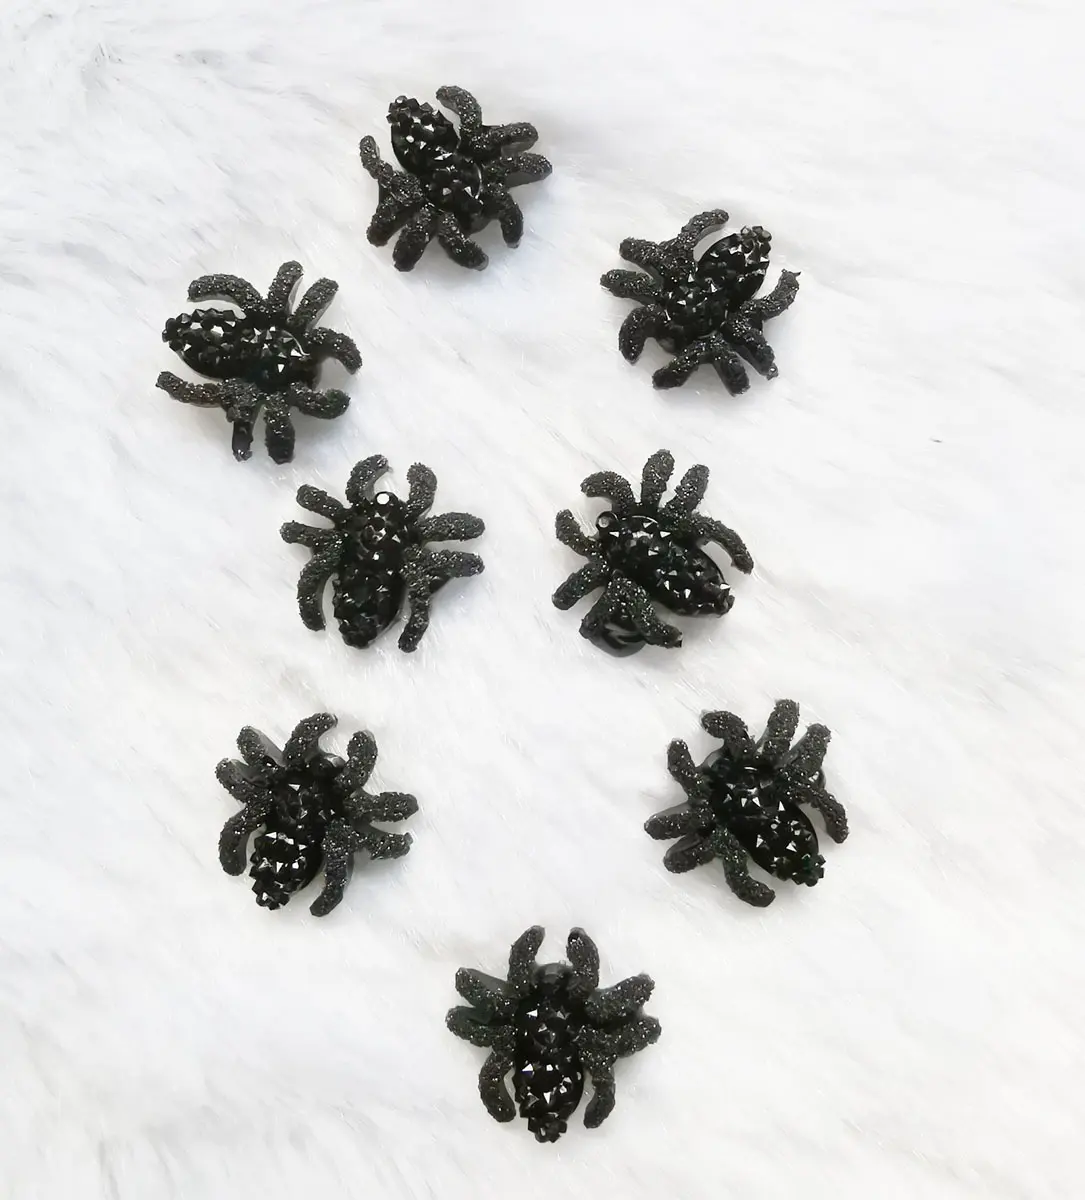 13mm Black Spider Harz Stein kleber auf Kleidungs stück und Flatback Strass Kleber auf Schuhe Vamp als Dekoration Hot Selling